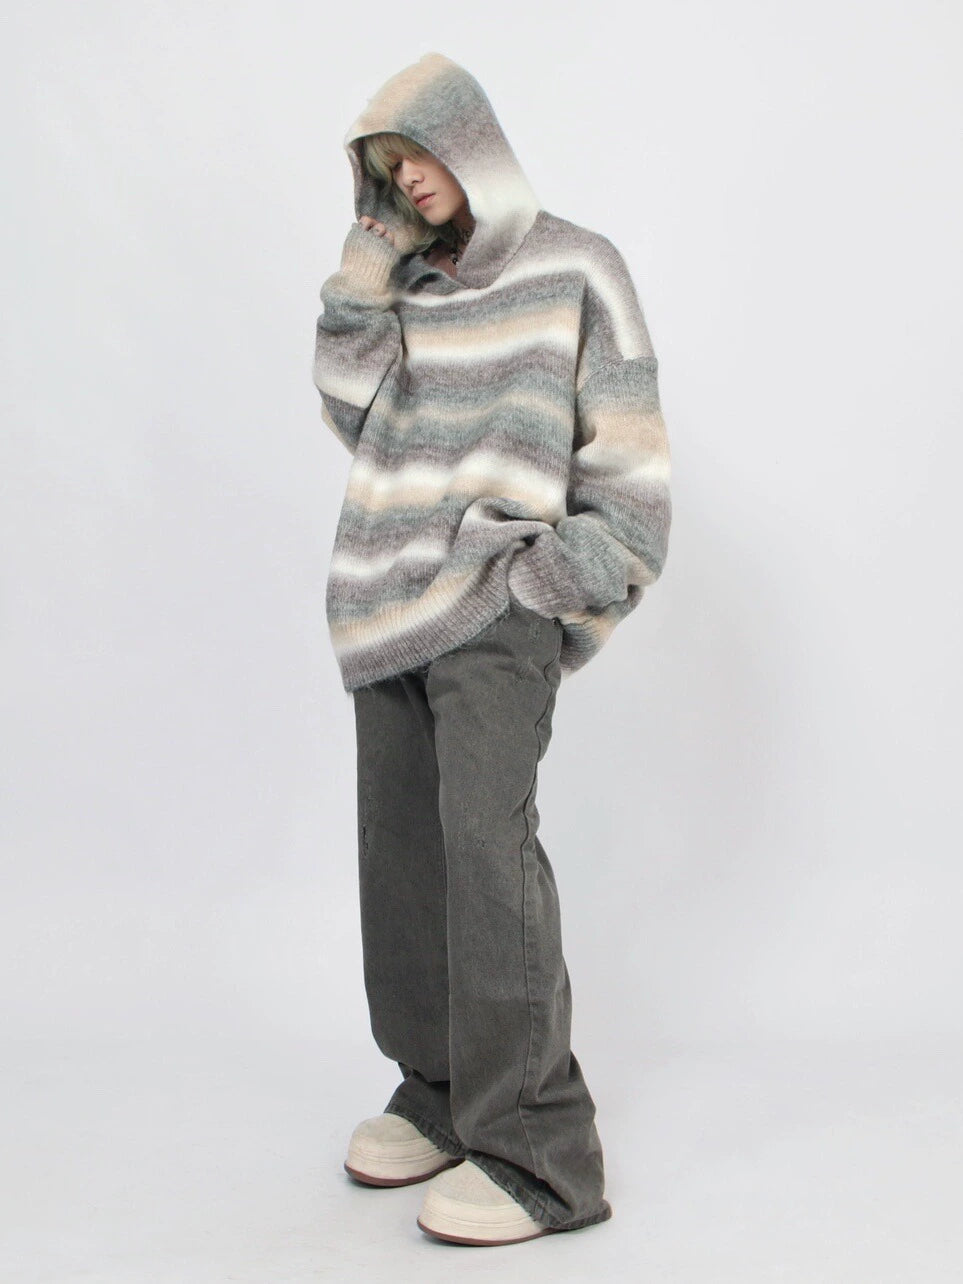 Stripe Hooded Knit Sweater WN4661